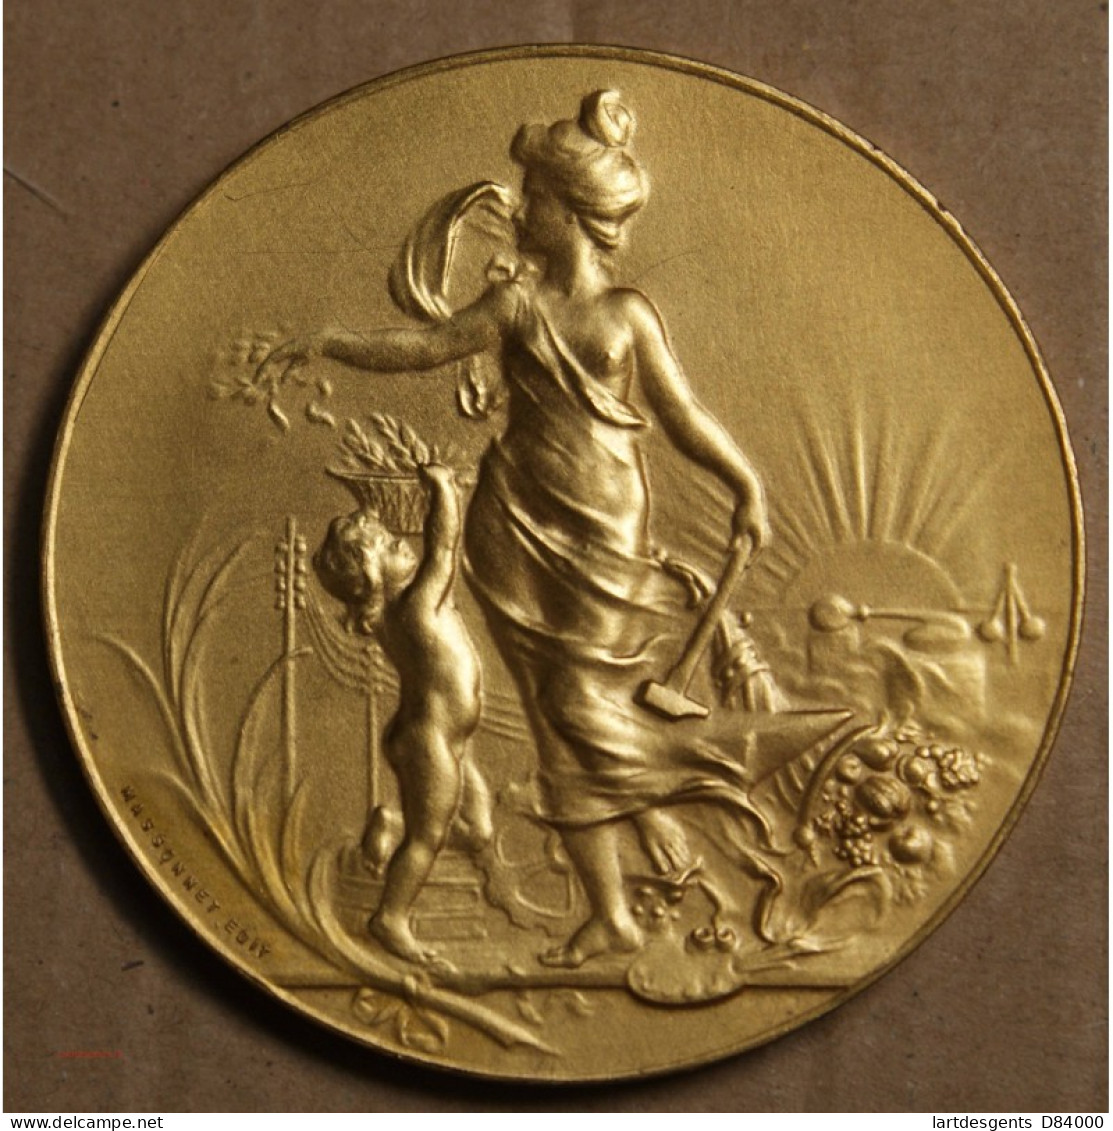 Médaille "Exposition Européenne De Cannes 1900, Attribué à Pétua (12), Lartdesgents.fr - Royaux / De Noblesse